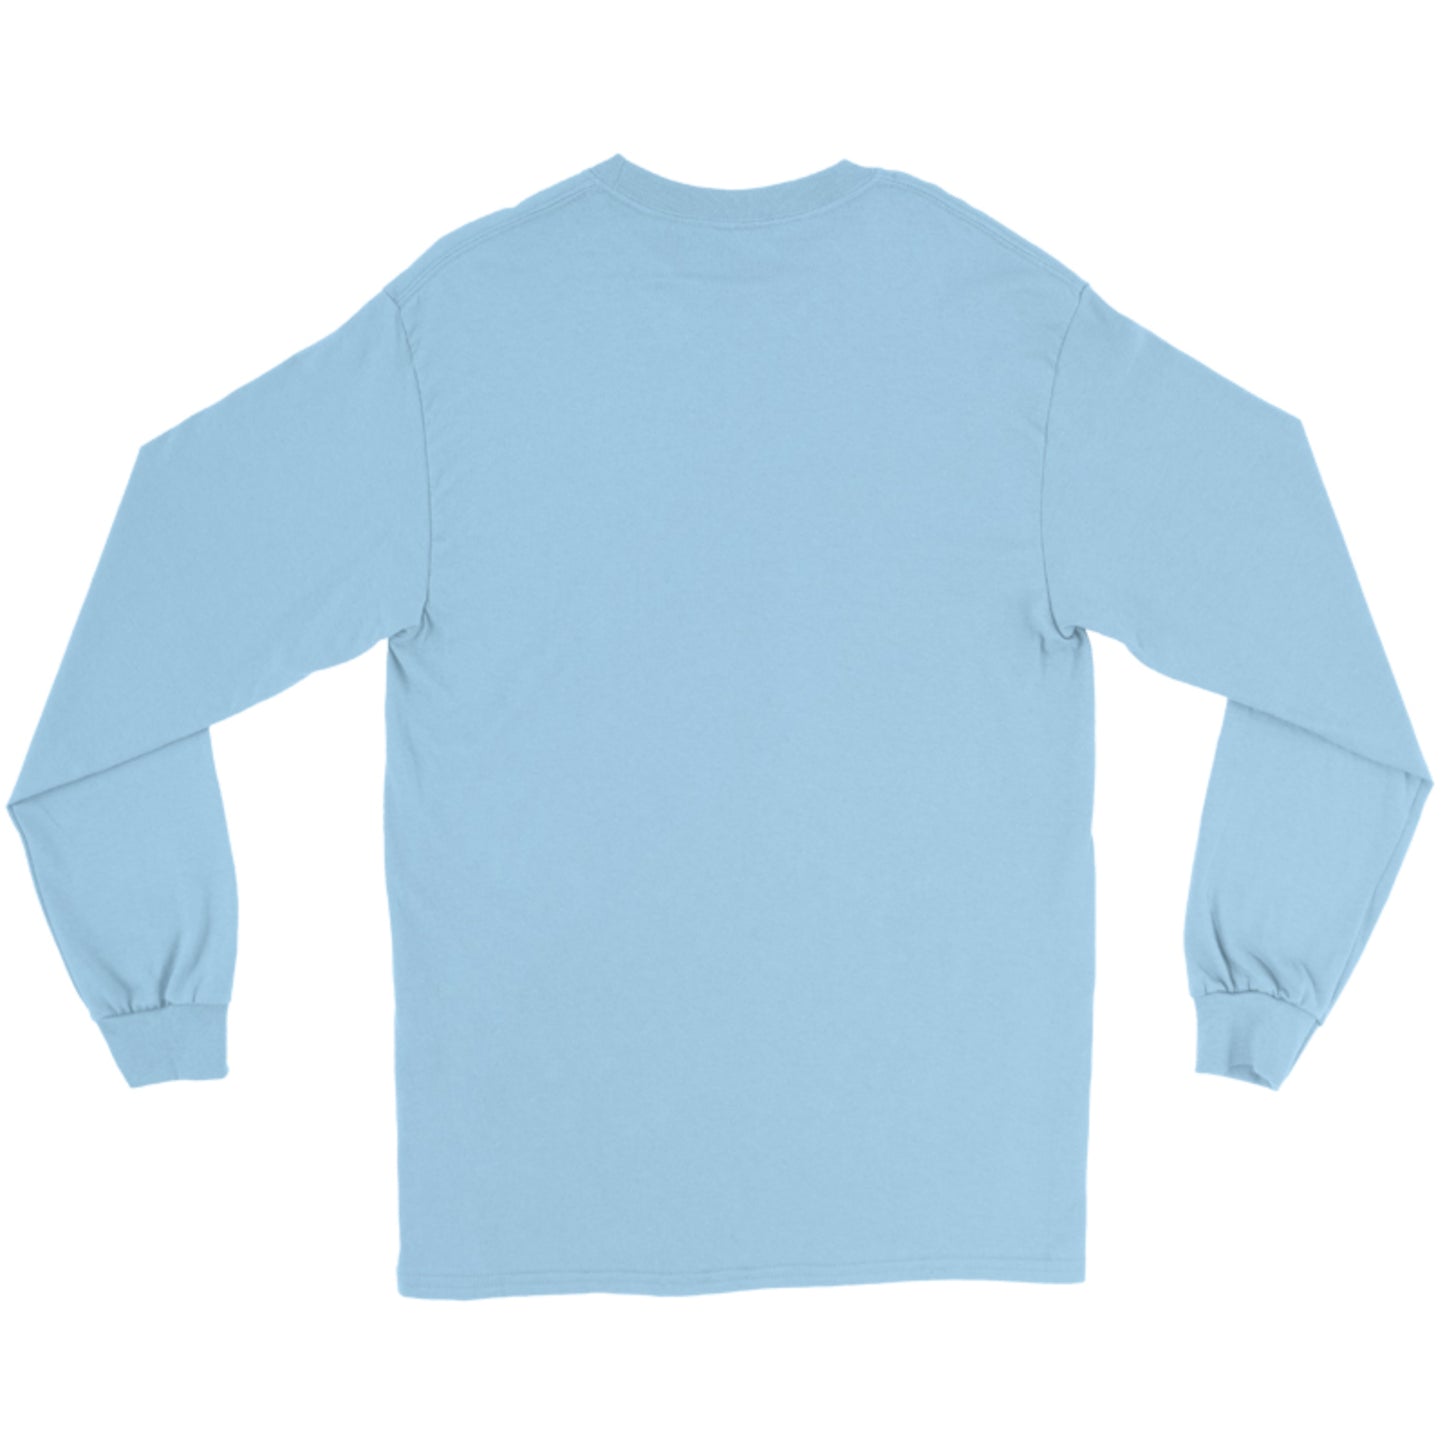 Gildan Adult Ultra Cotton Long-Sleeve T-shirt